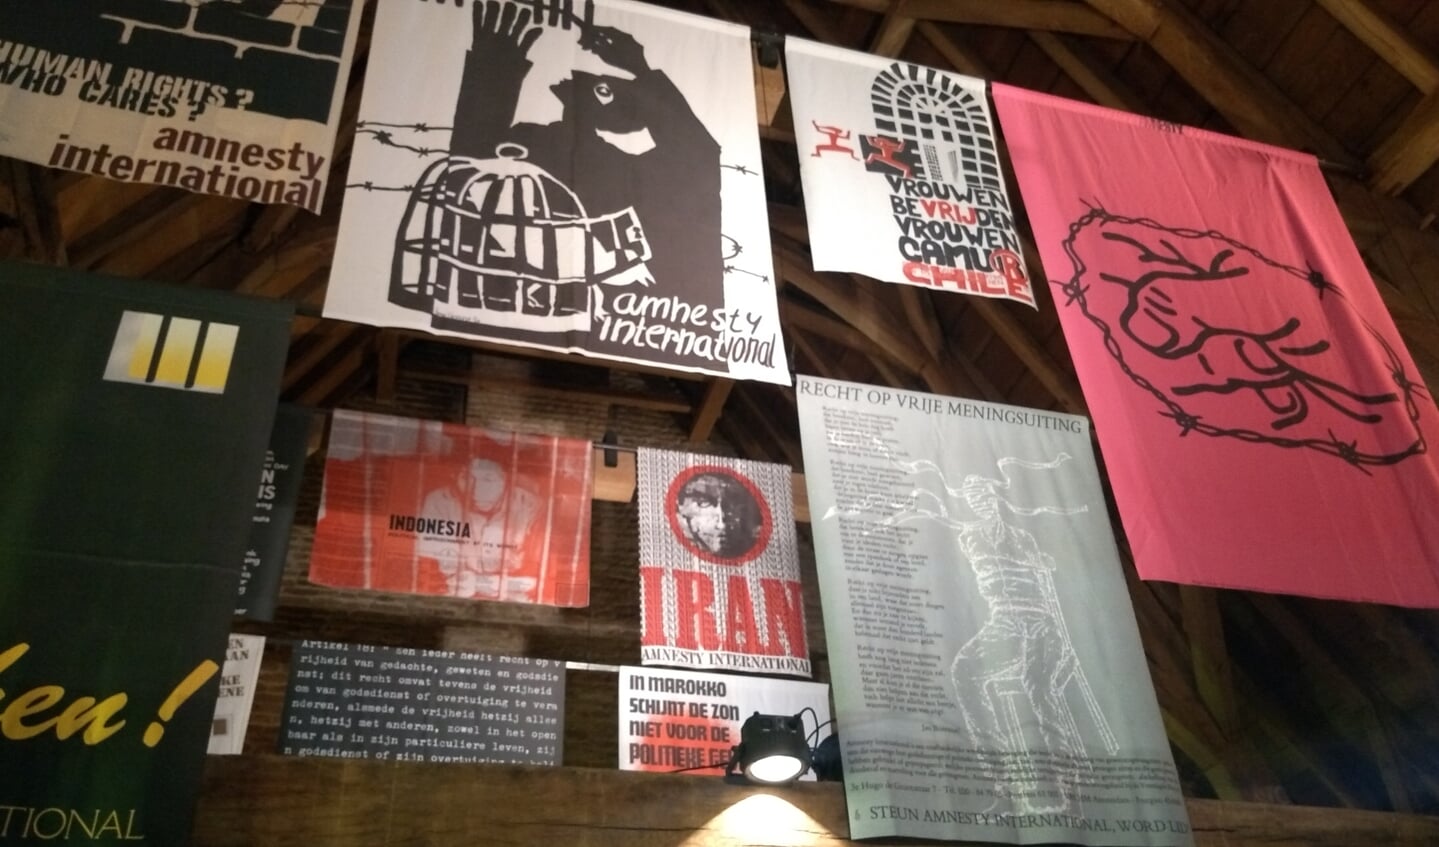 Op de schrijfzolder hanen diverse posters met aandacht voor mensenrechten